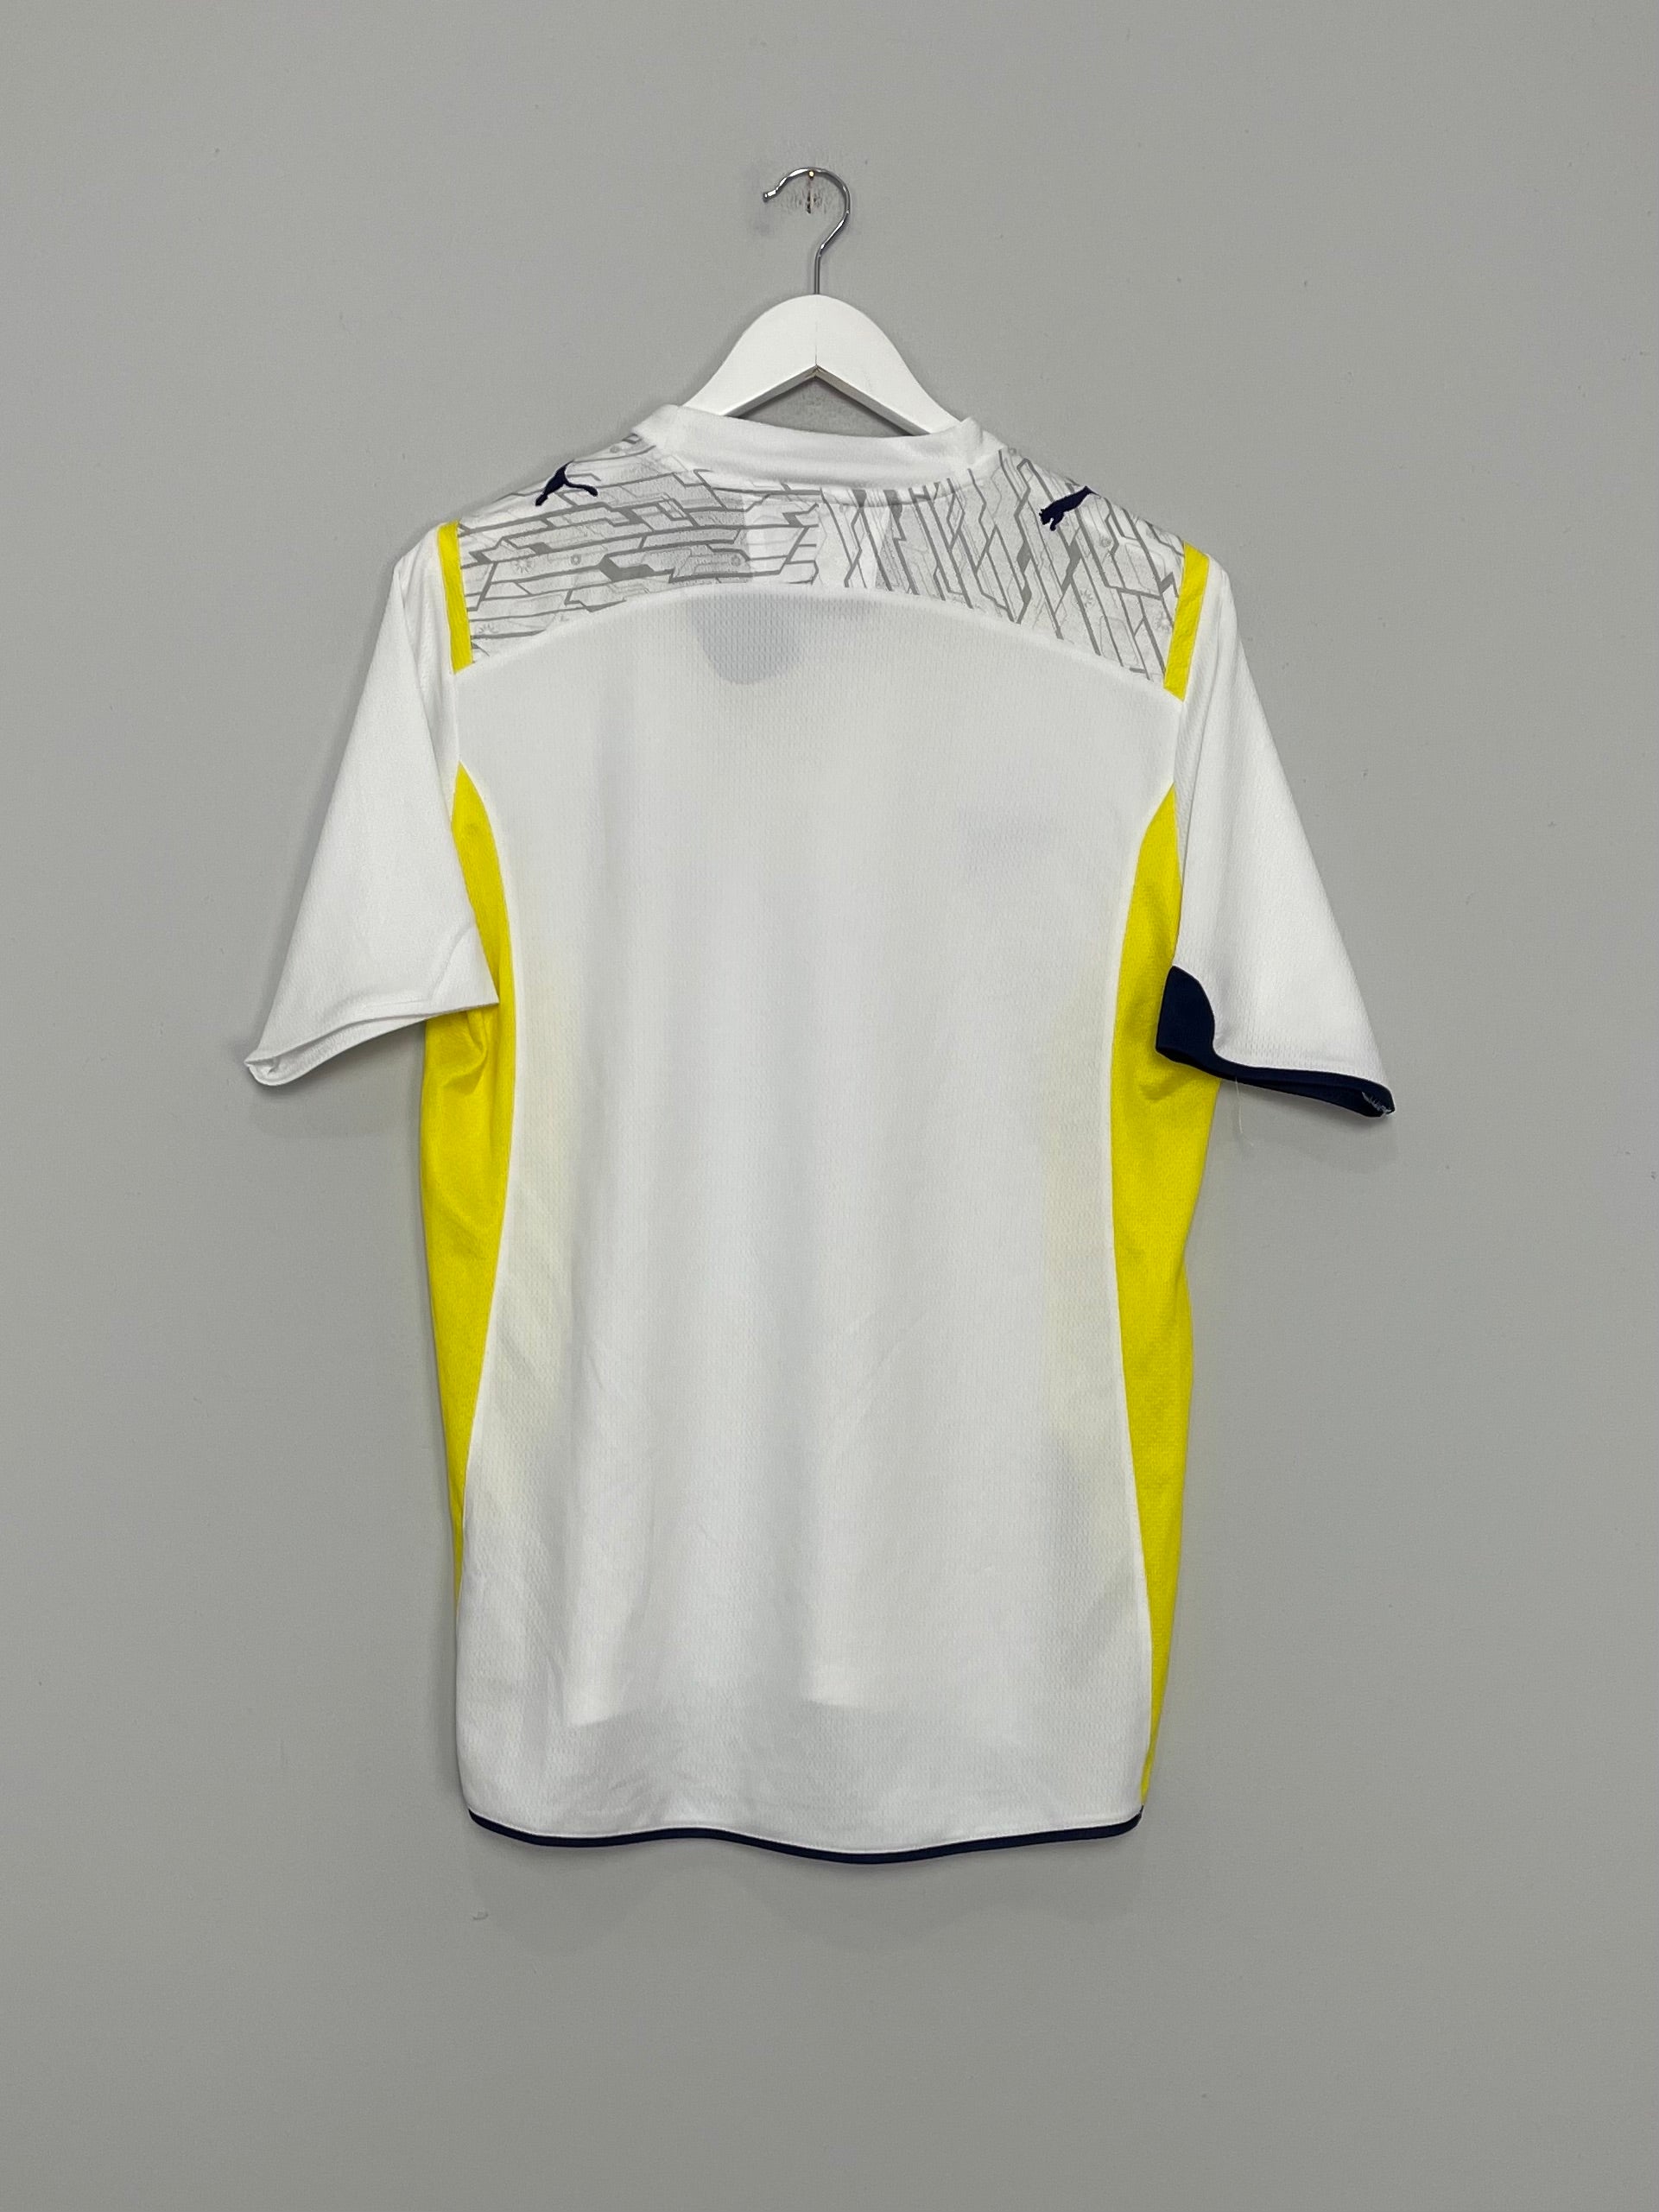 Tottenham Hotspur 2009 - 2010 Home football shirt jersey Puma size M